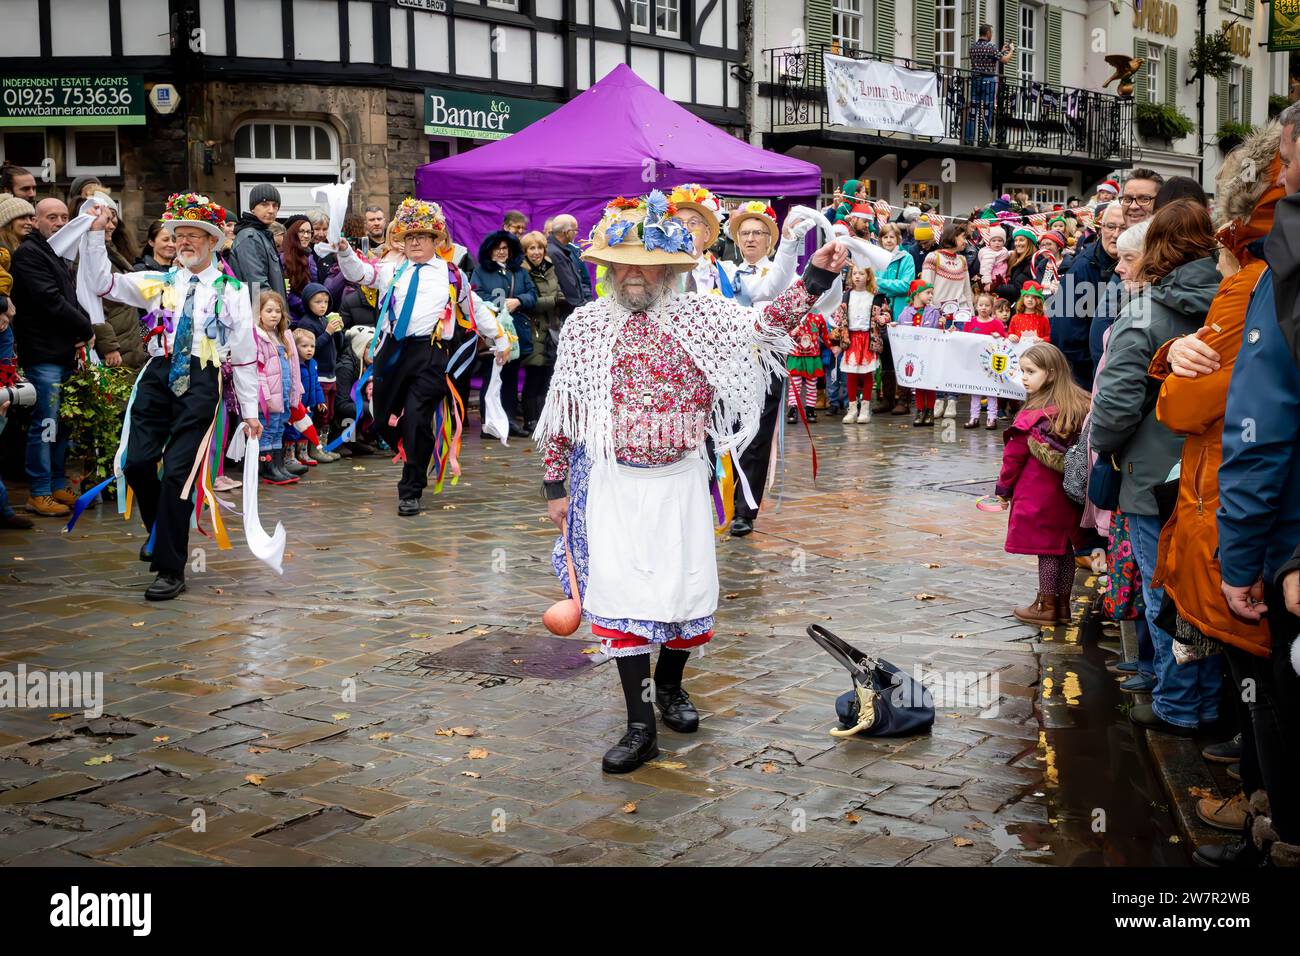 Plusieurs groupes de danseurs Morris se sont produits dans les rues de Lymm, dans le Cheshire, en Angleterre, à leur Dickensian Festival annuel Banque D'Images